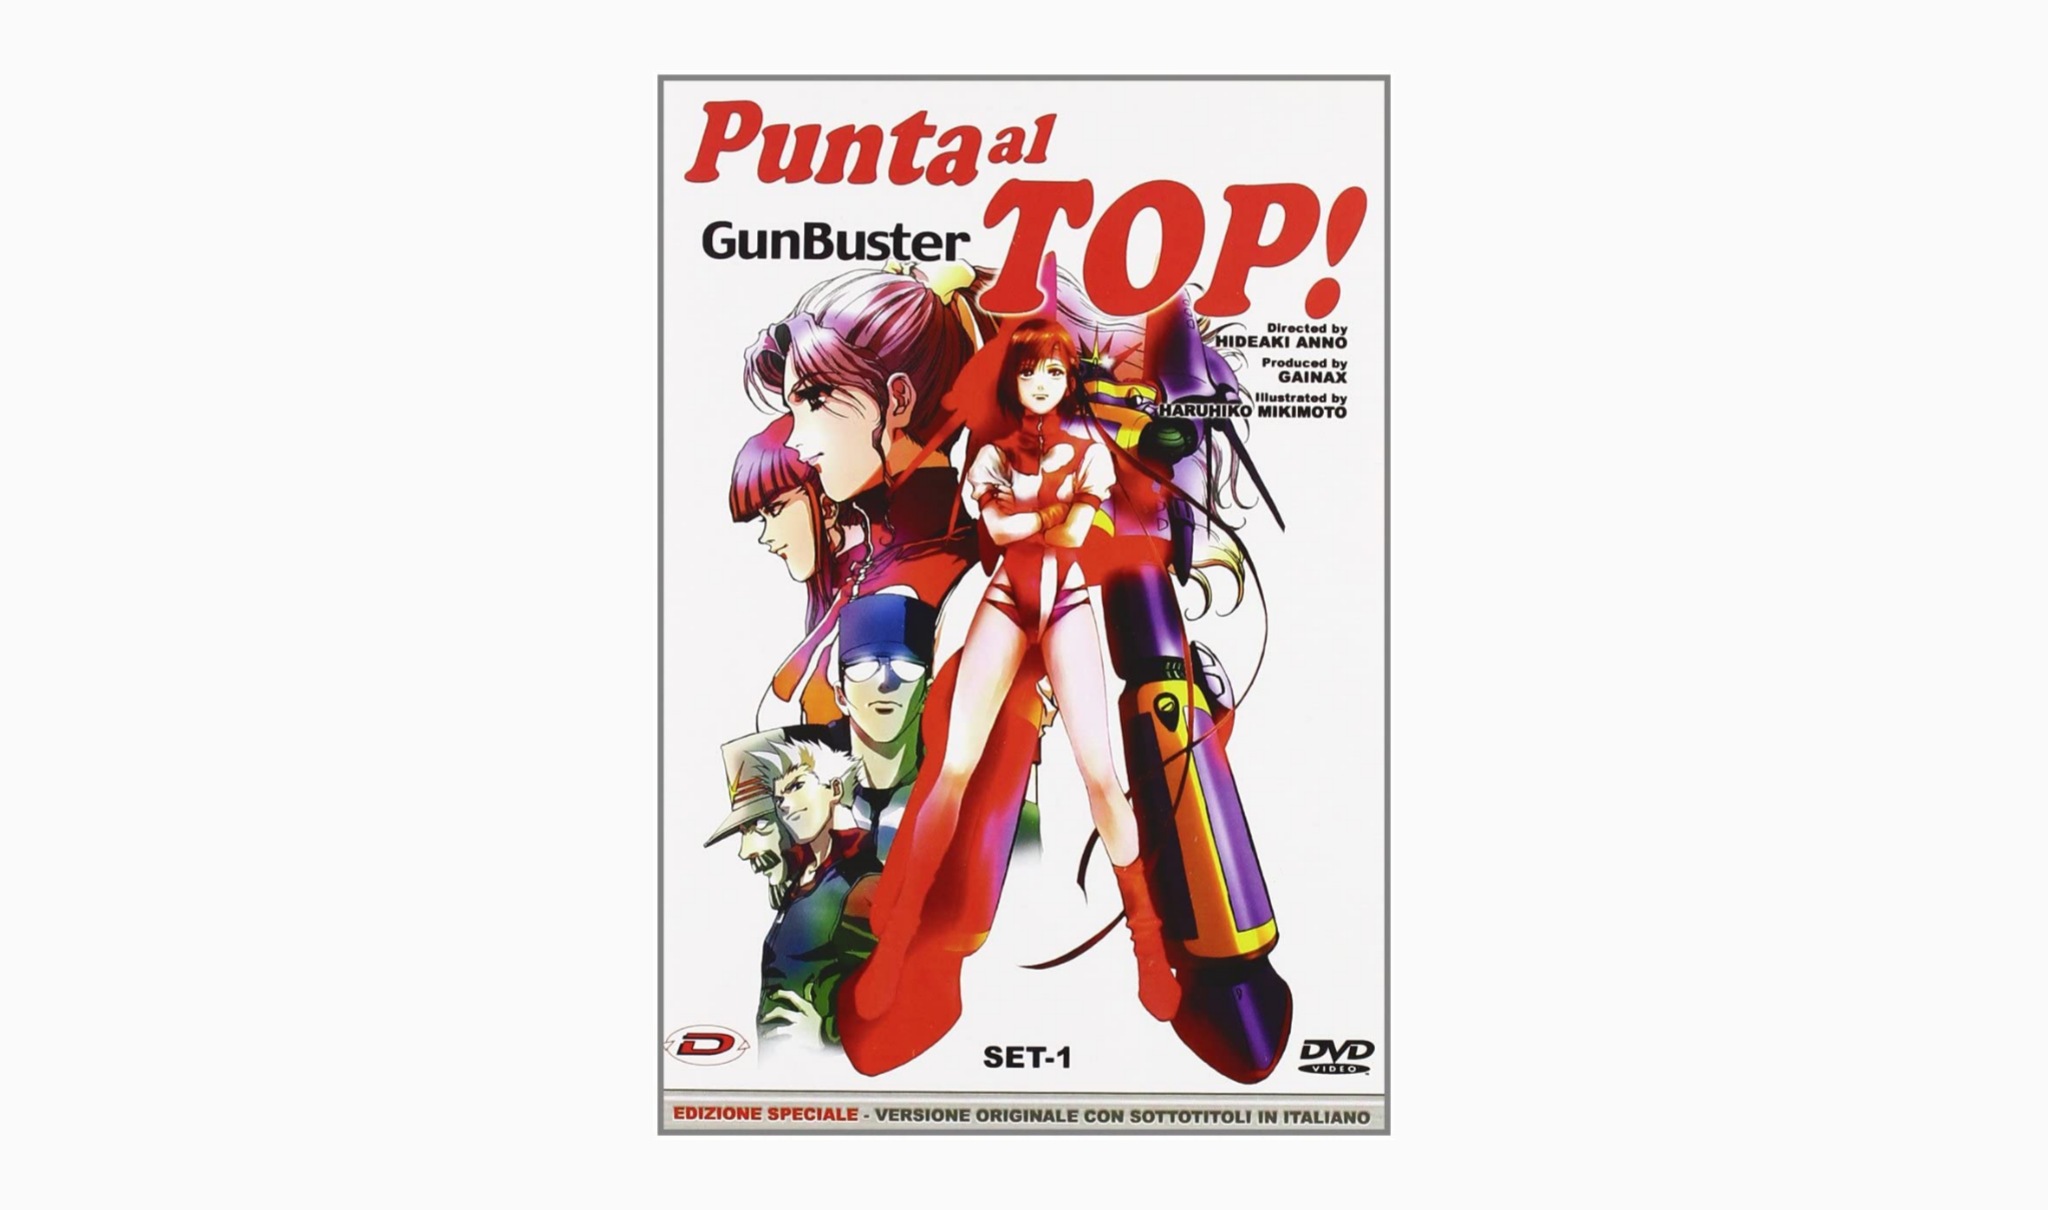 Punta al top! Gunbuster